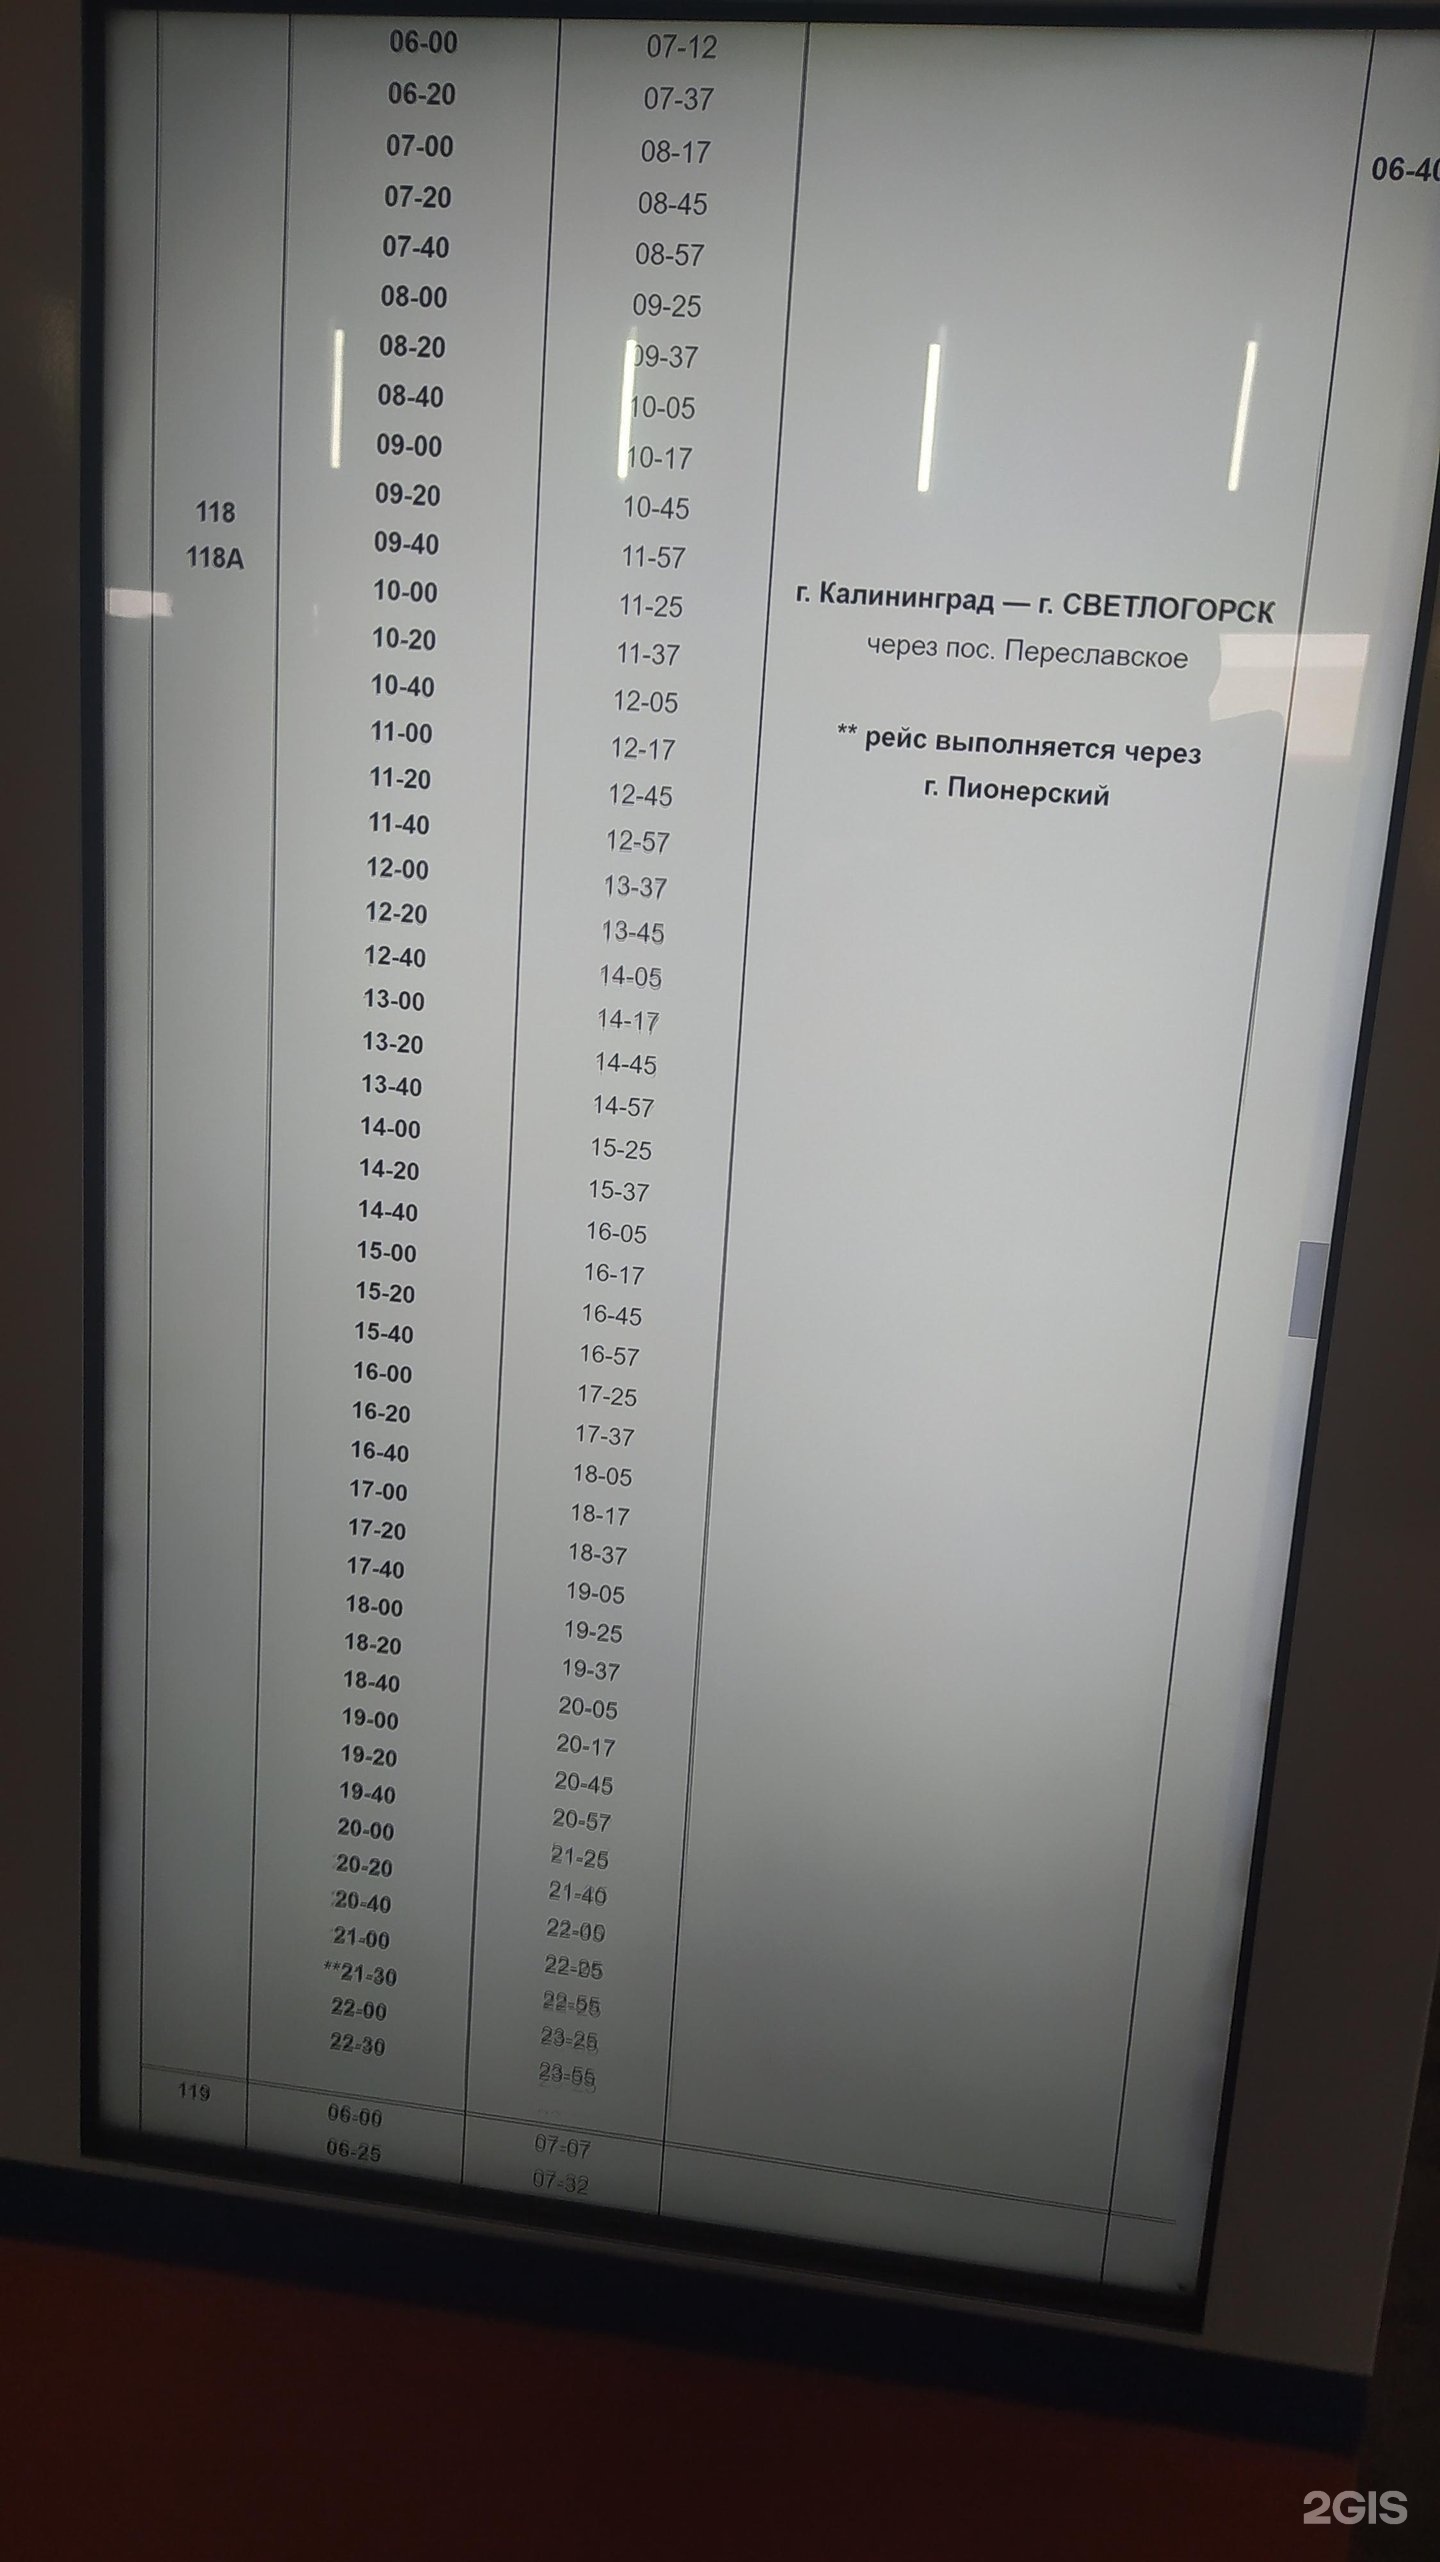 Автовокзал калининград билеты